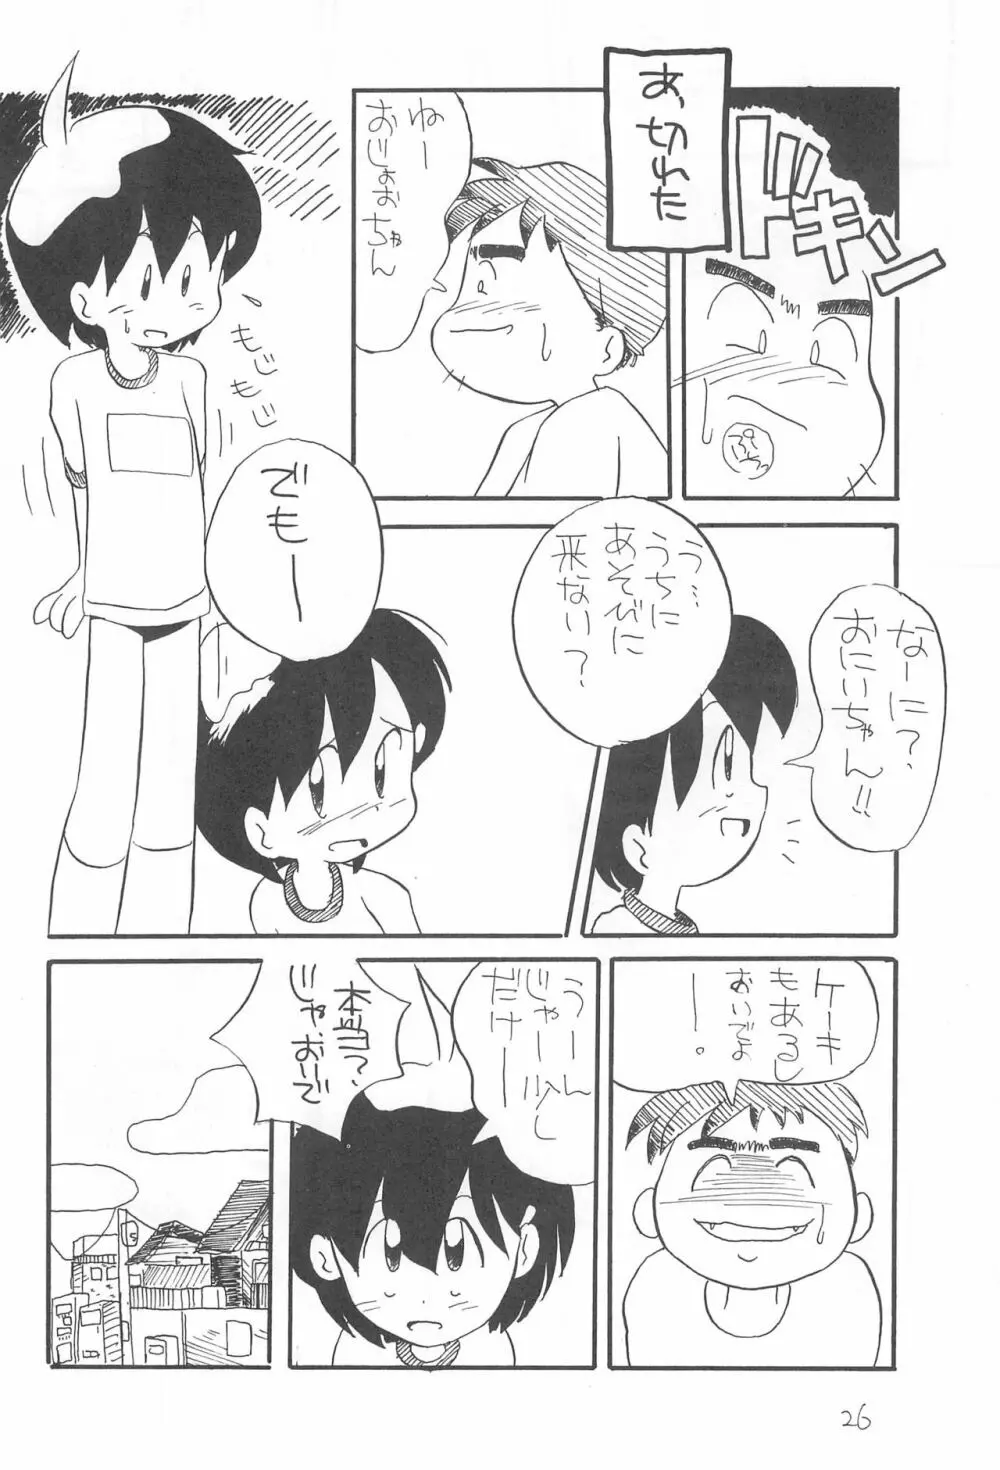 ぺたぺた 2 - page26